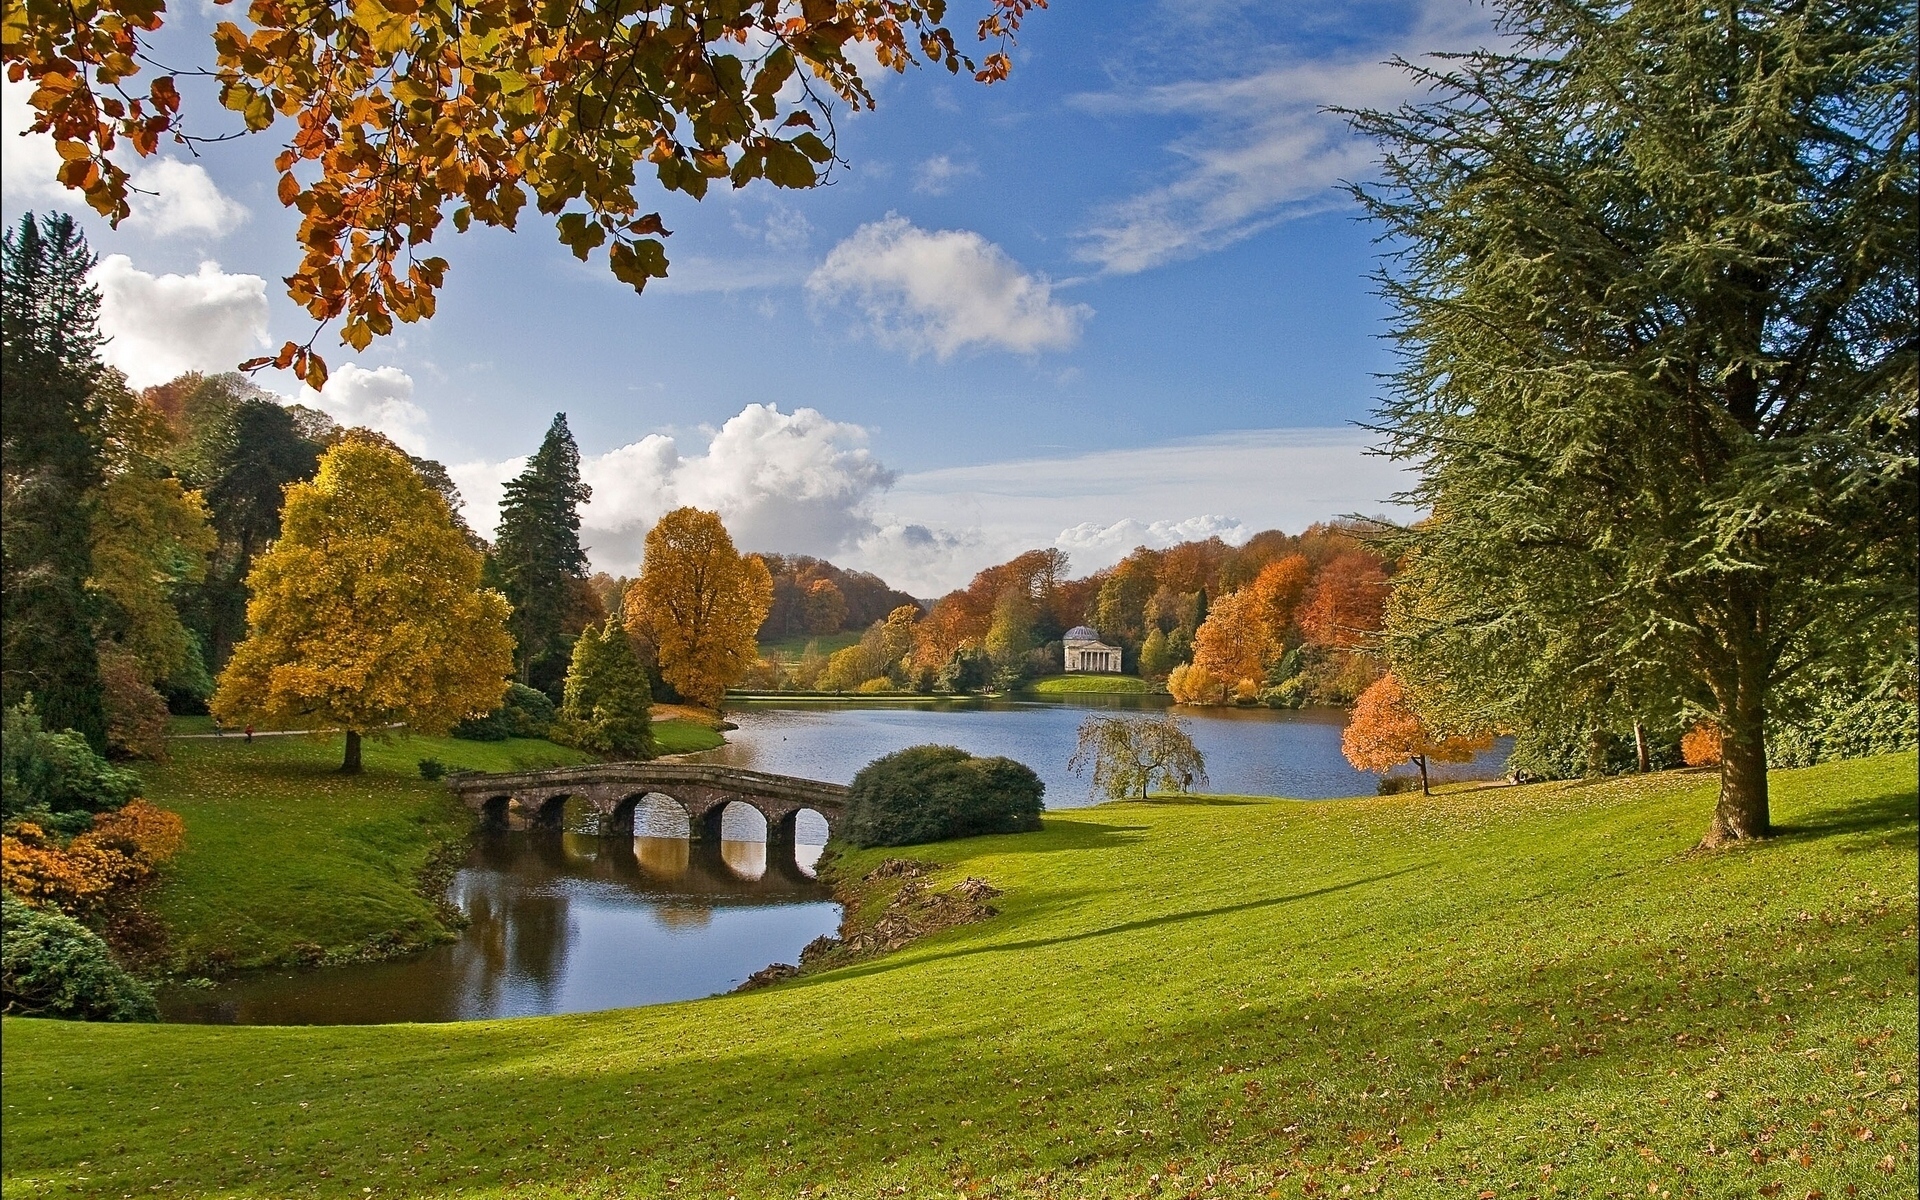 Картинки природы парка. Парк Стоурхед Англия. Сад Стоурхед. Великобритания. Пейзажный парк Стоурхед, Англия. Парк Стоурхед в Уилтшире.